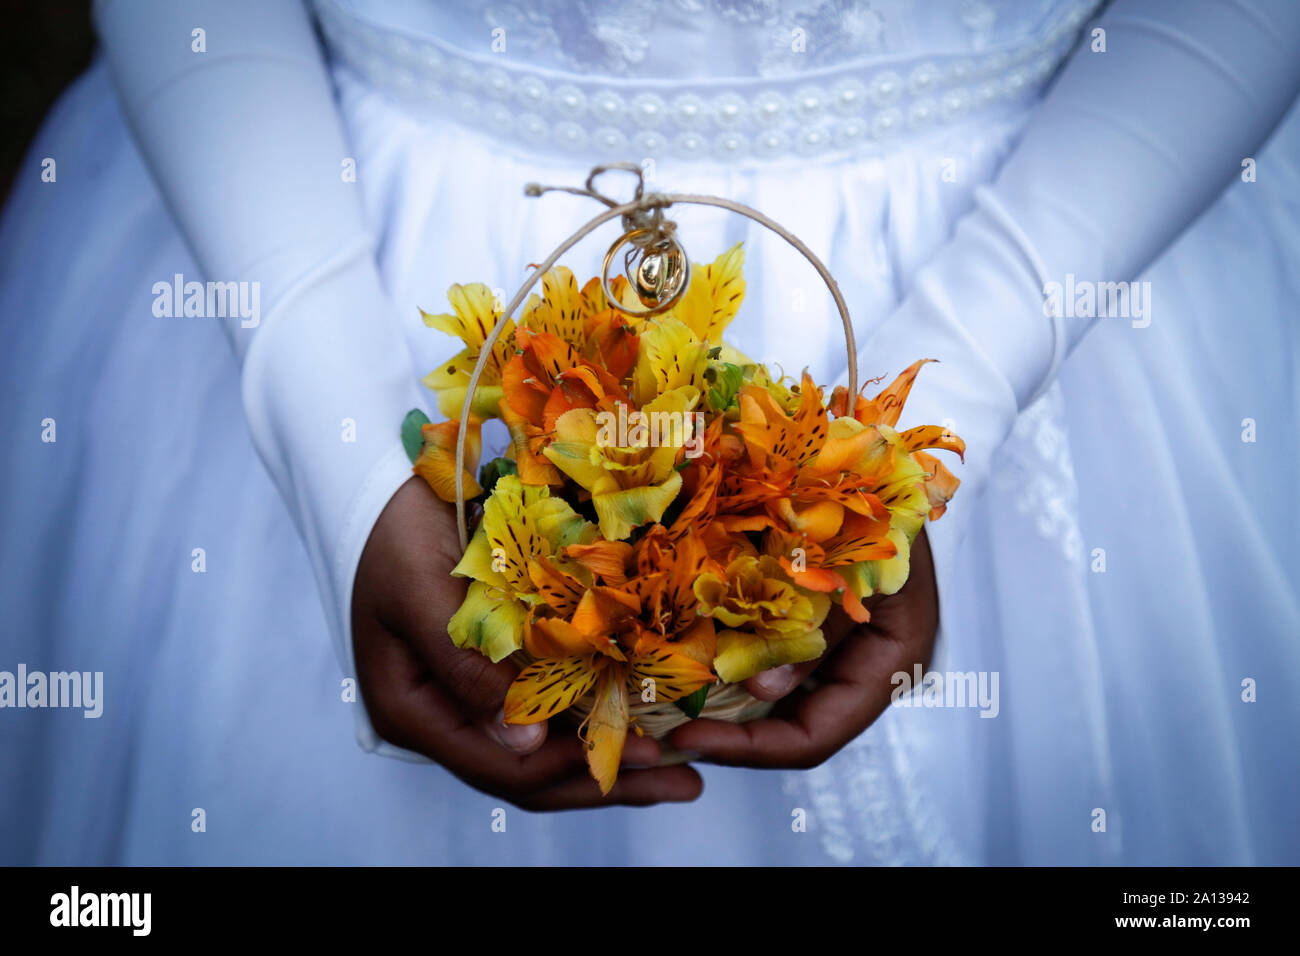 Bambino mani bouquet con gli anelli di nozze, dettaglio della damigella della mano che tiene la disposizione con gli anelli di nozze, gli anelli di nozze, gioielli, uniti han Foto Stock